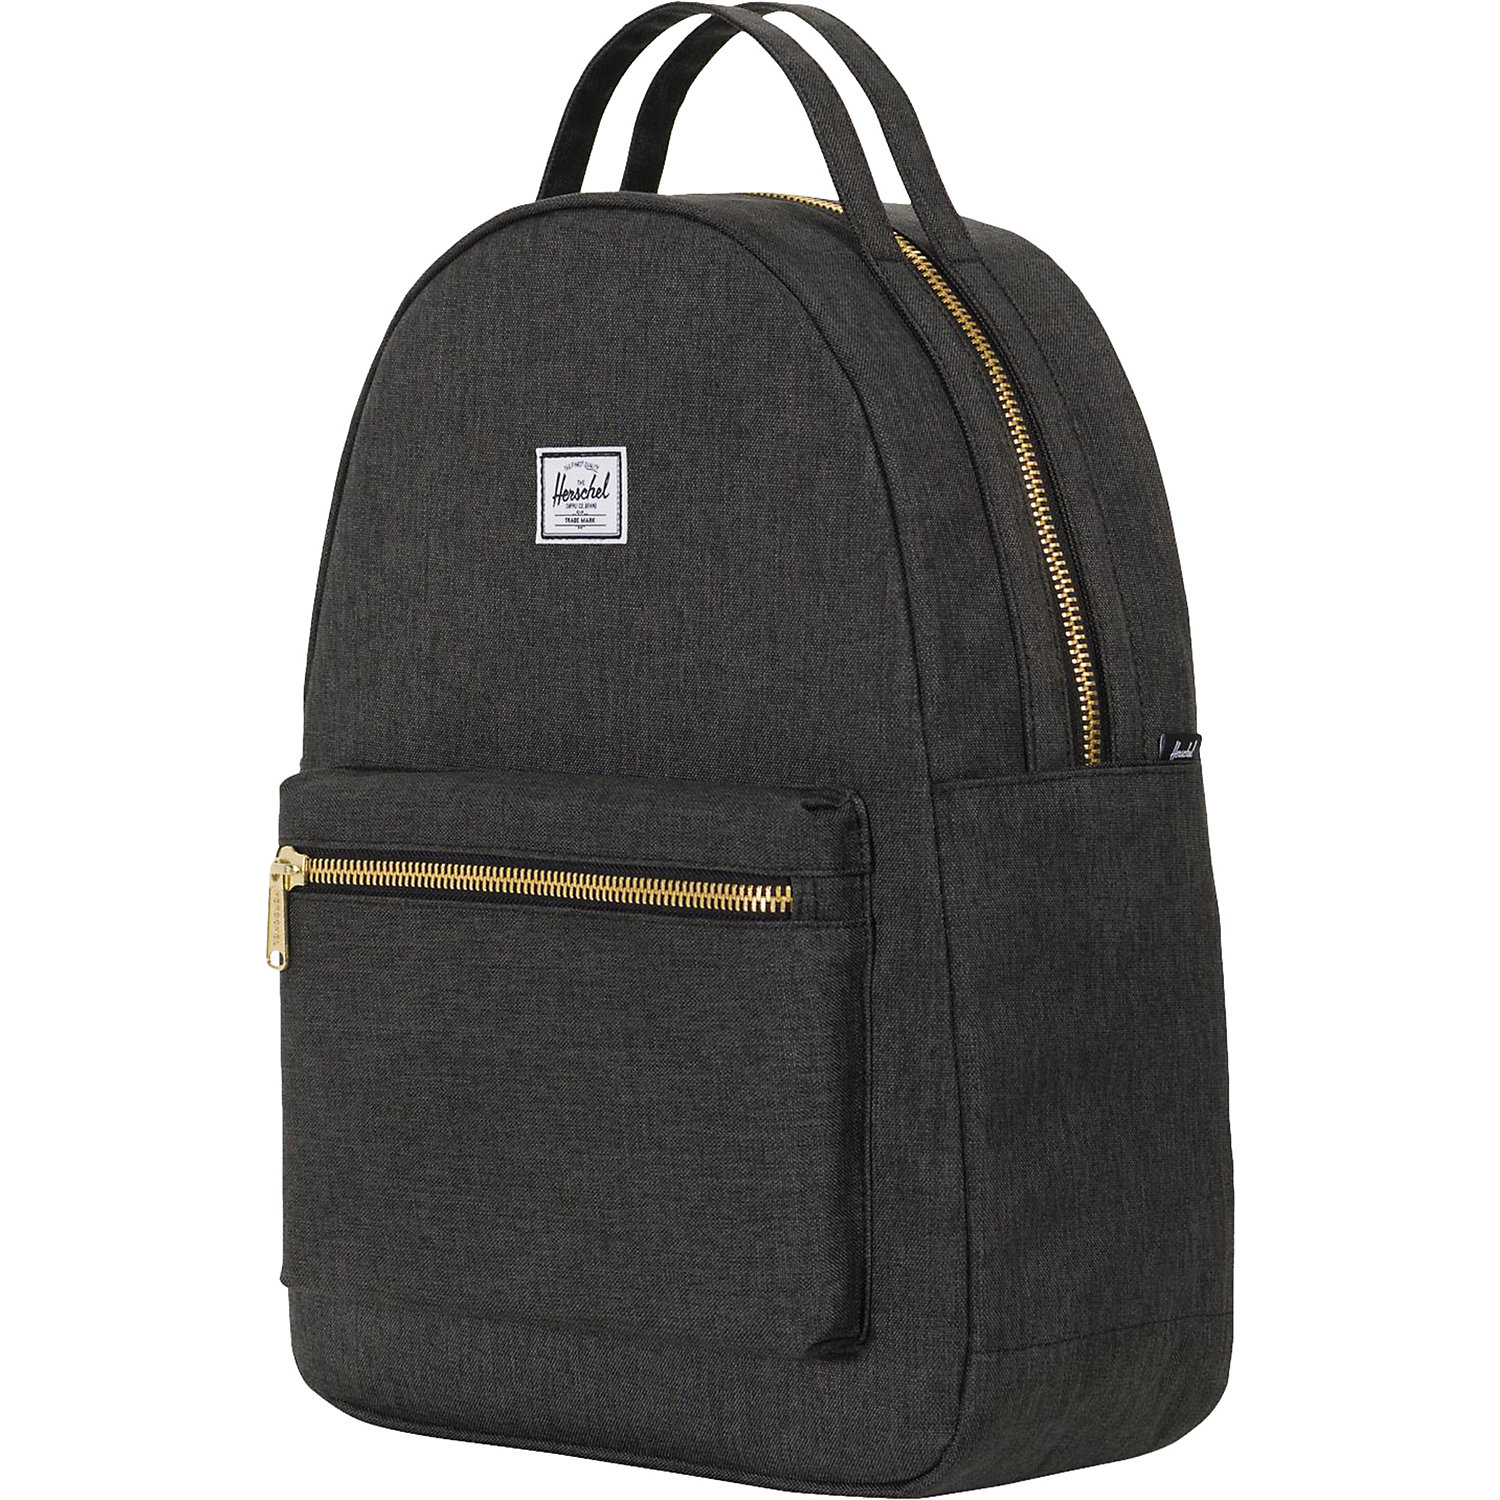 Herschel Supply Co Nova Mid-Volume Backpack